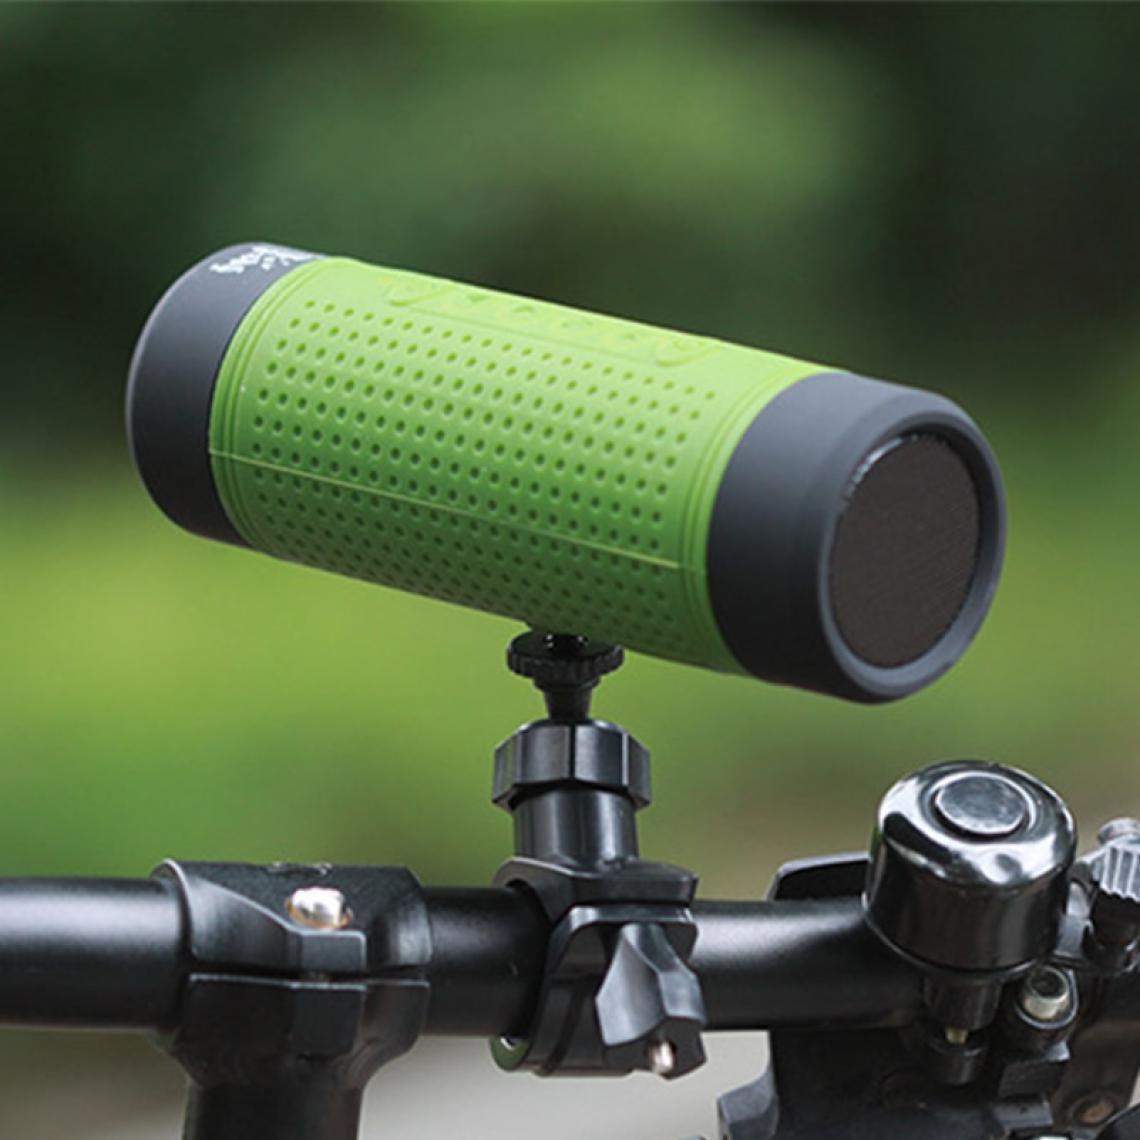 Universal - Haut-parleurs Bluetooth Haut-parleurs portables sans fil extérieurs Système audio Subwoofer de vélo Lumière LED de haut-parleur de vélo Equitation Musique | Haut-parleur portable (vert) - Hauts-parleurs